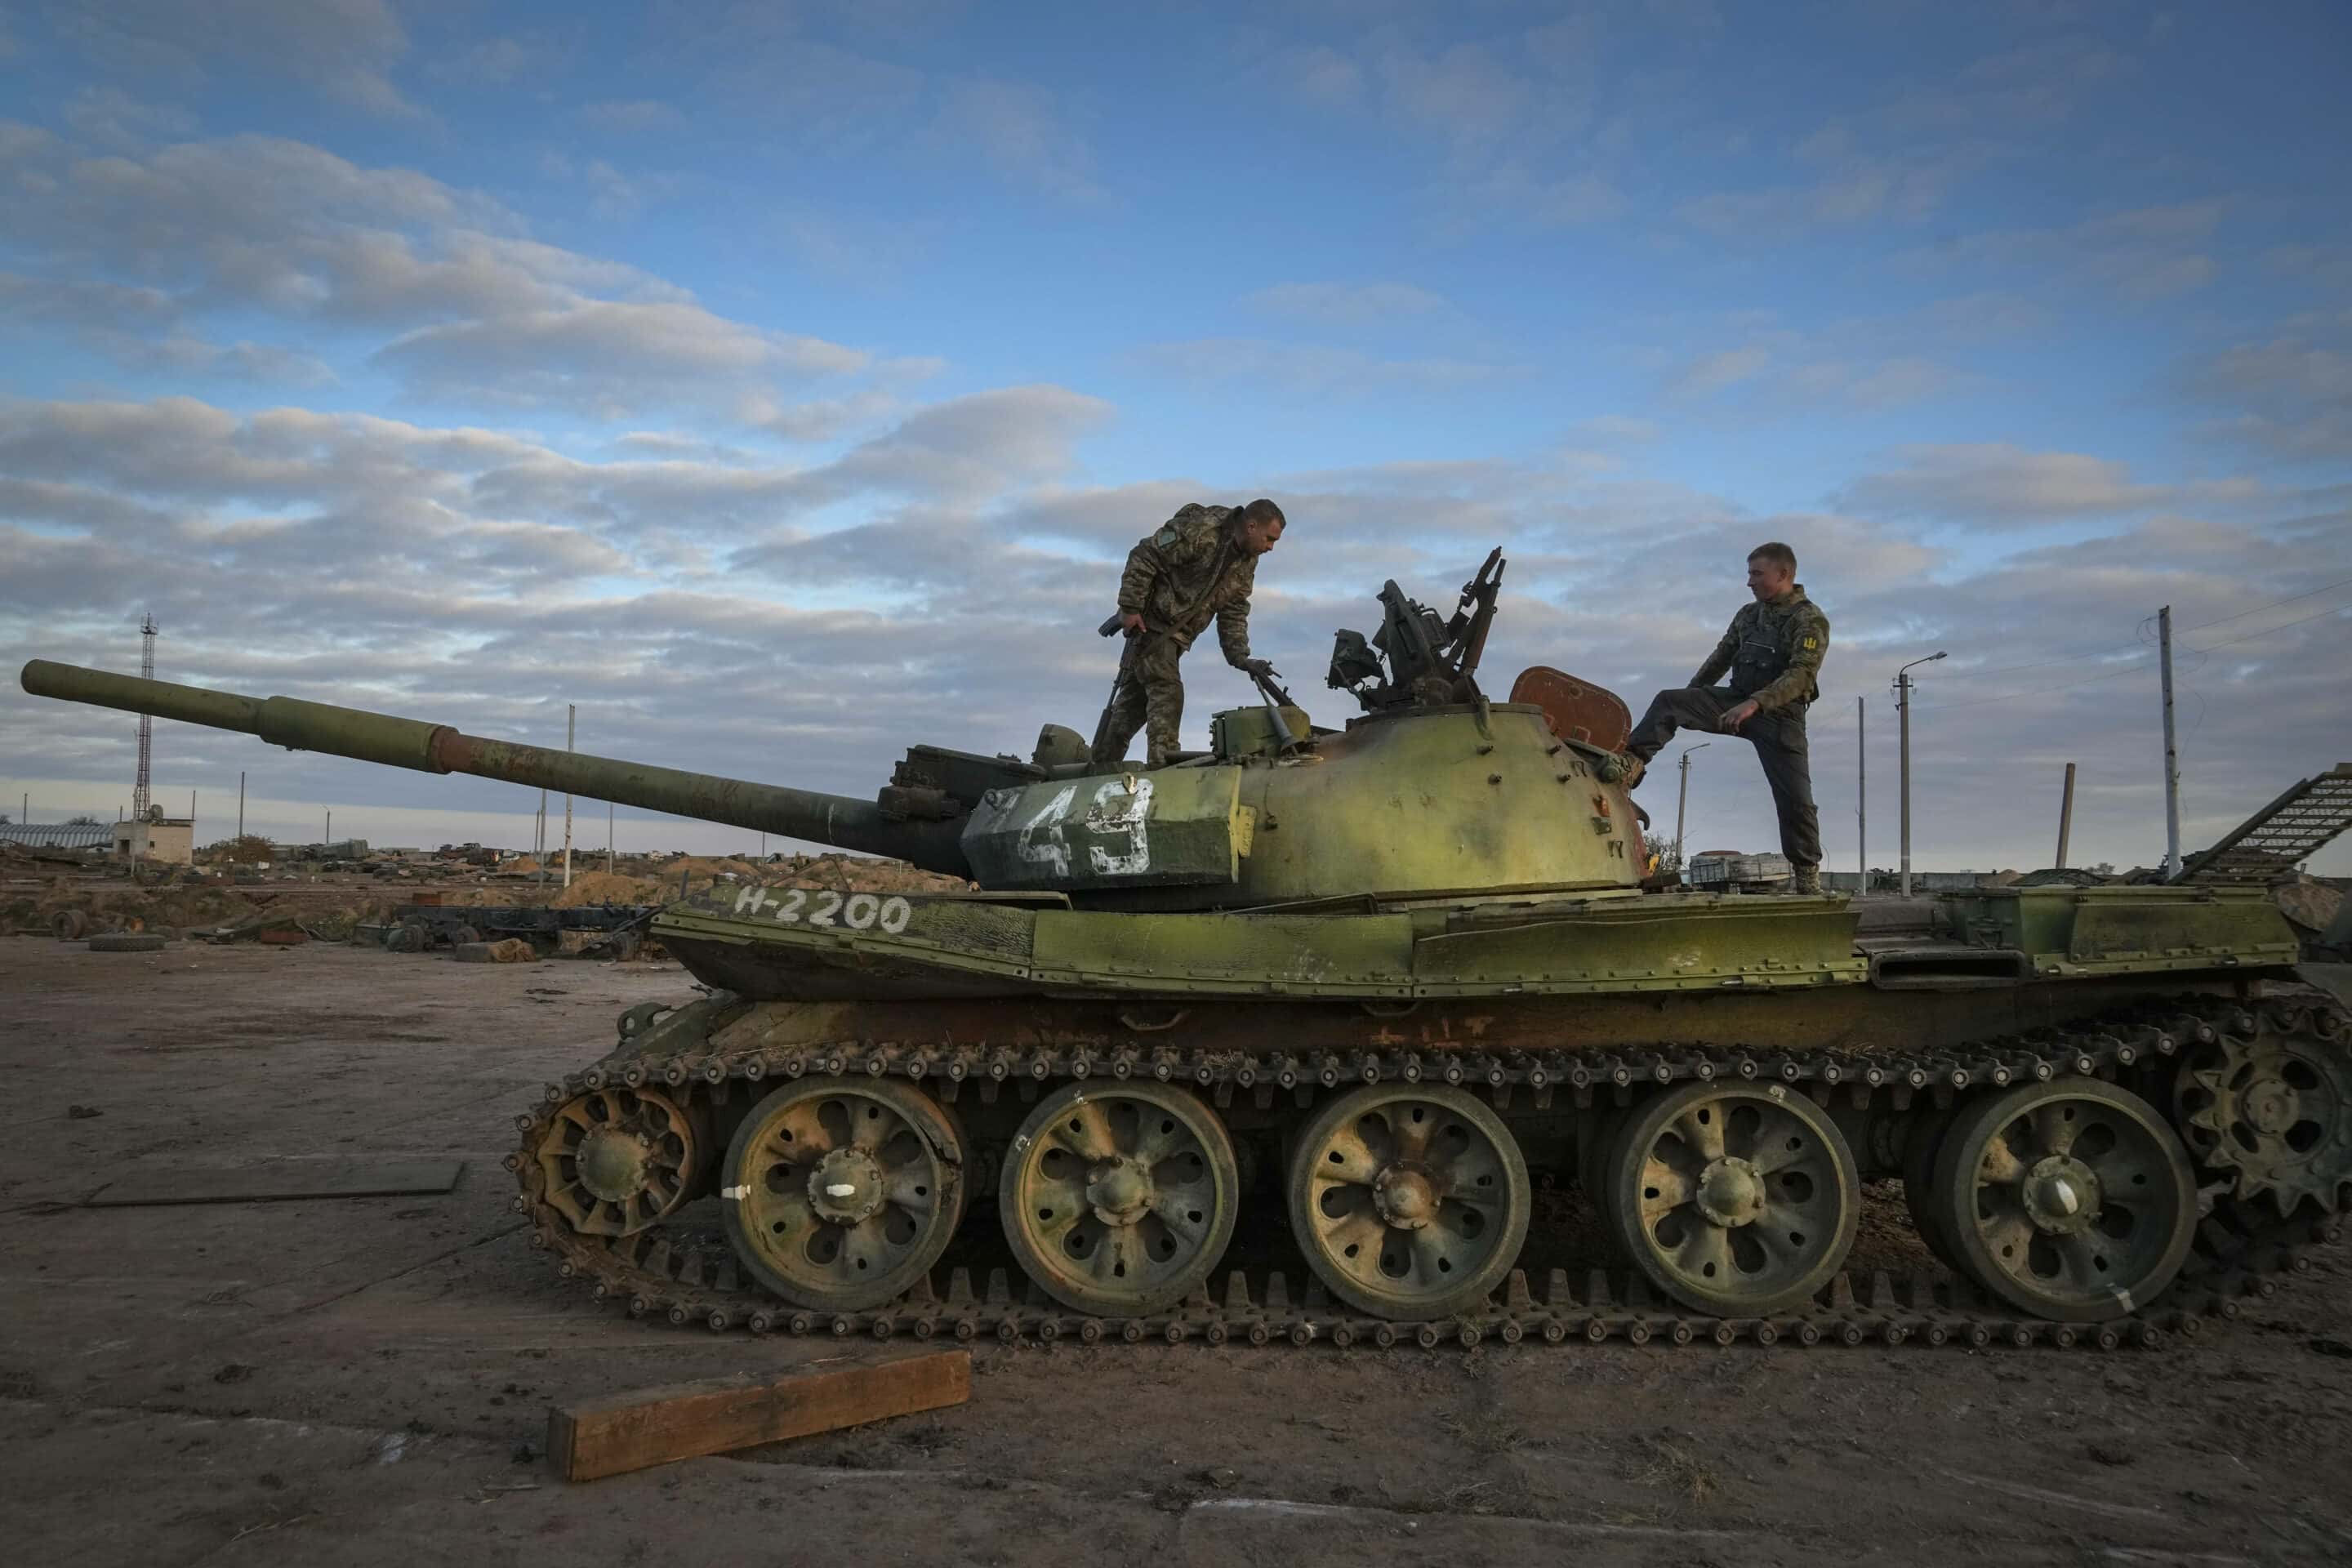 La tactique militaire sur Kherson constitue une sorte de victoire